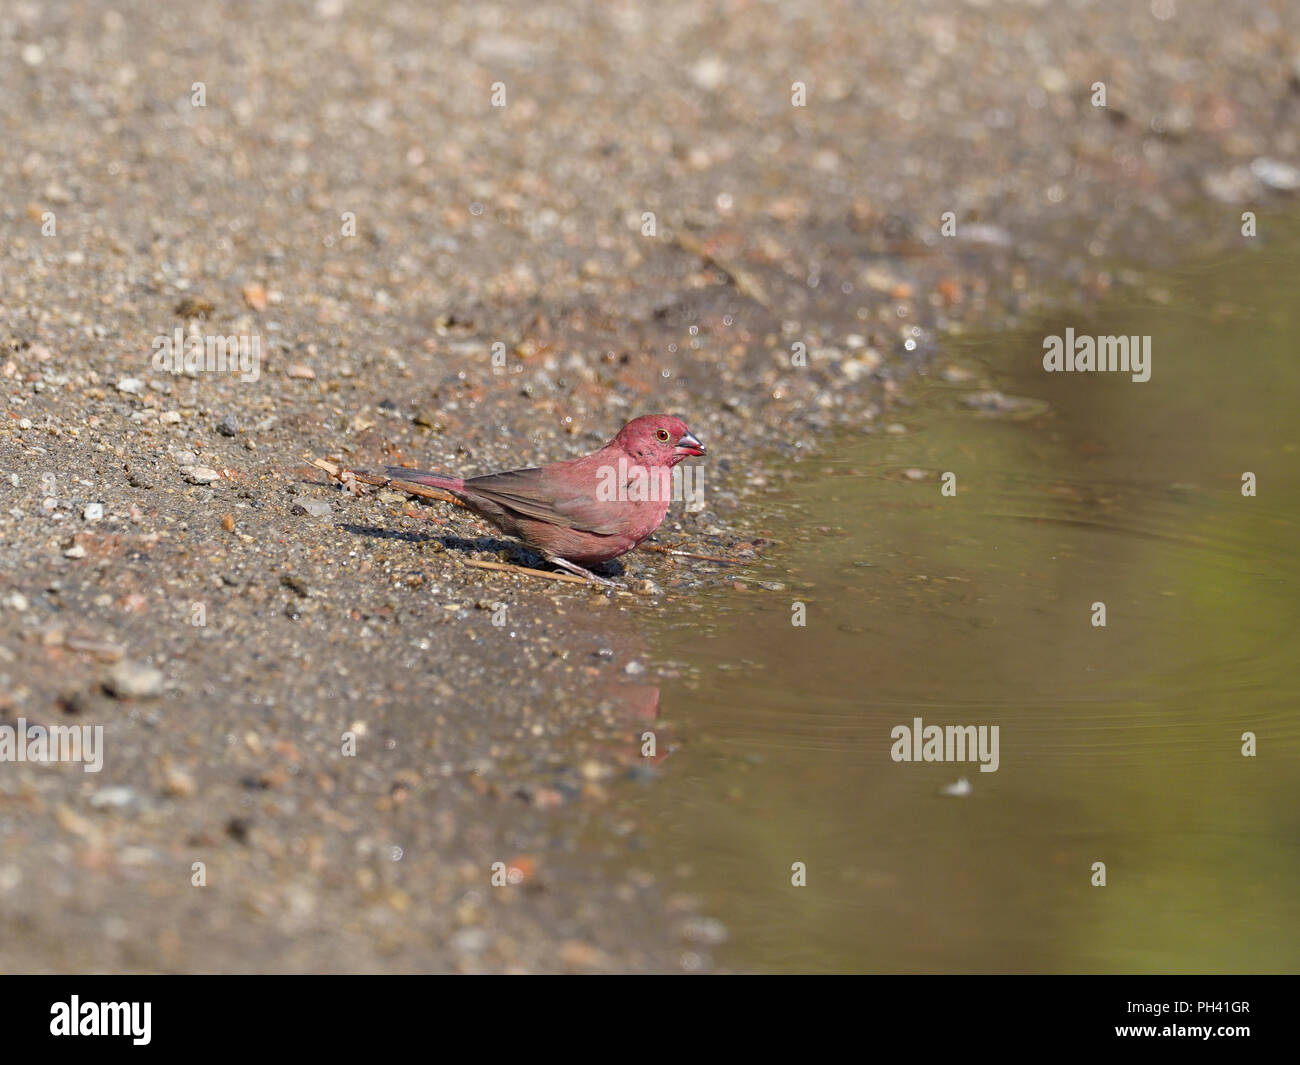 Rojo-facturados, Lagonosticta senegala firefinch, varón soltero por agua, Uganda, agosto de 2018 Foto de stock